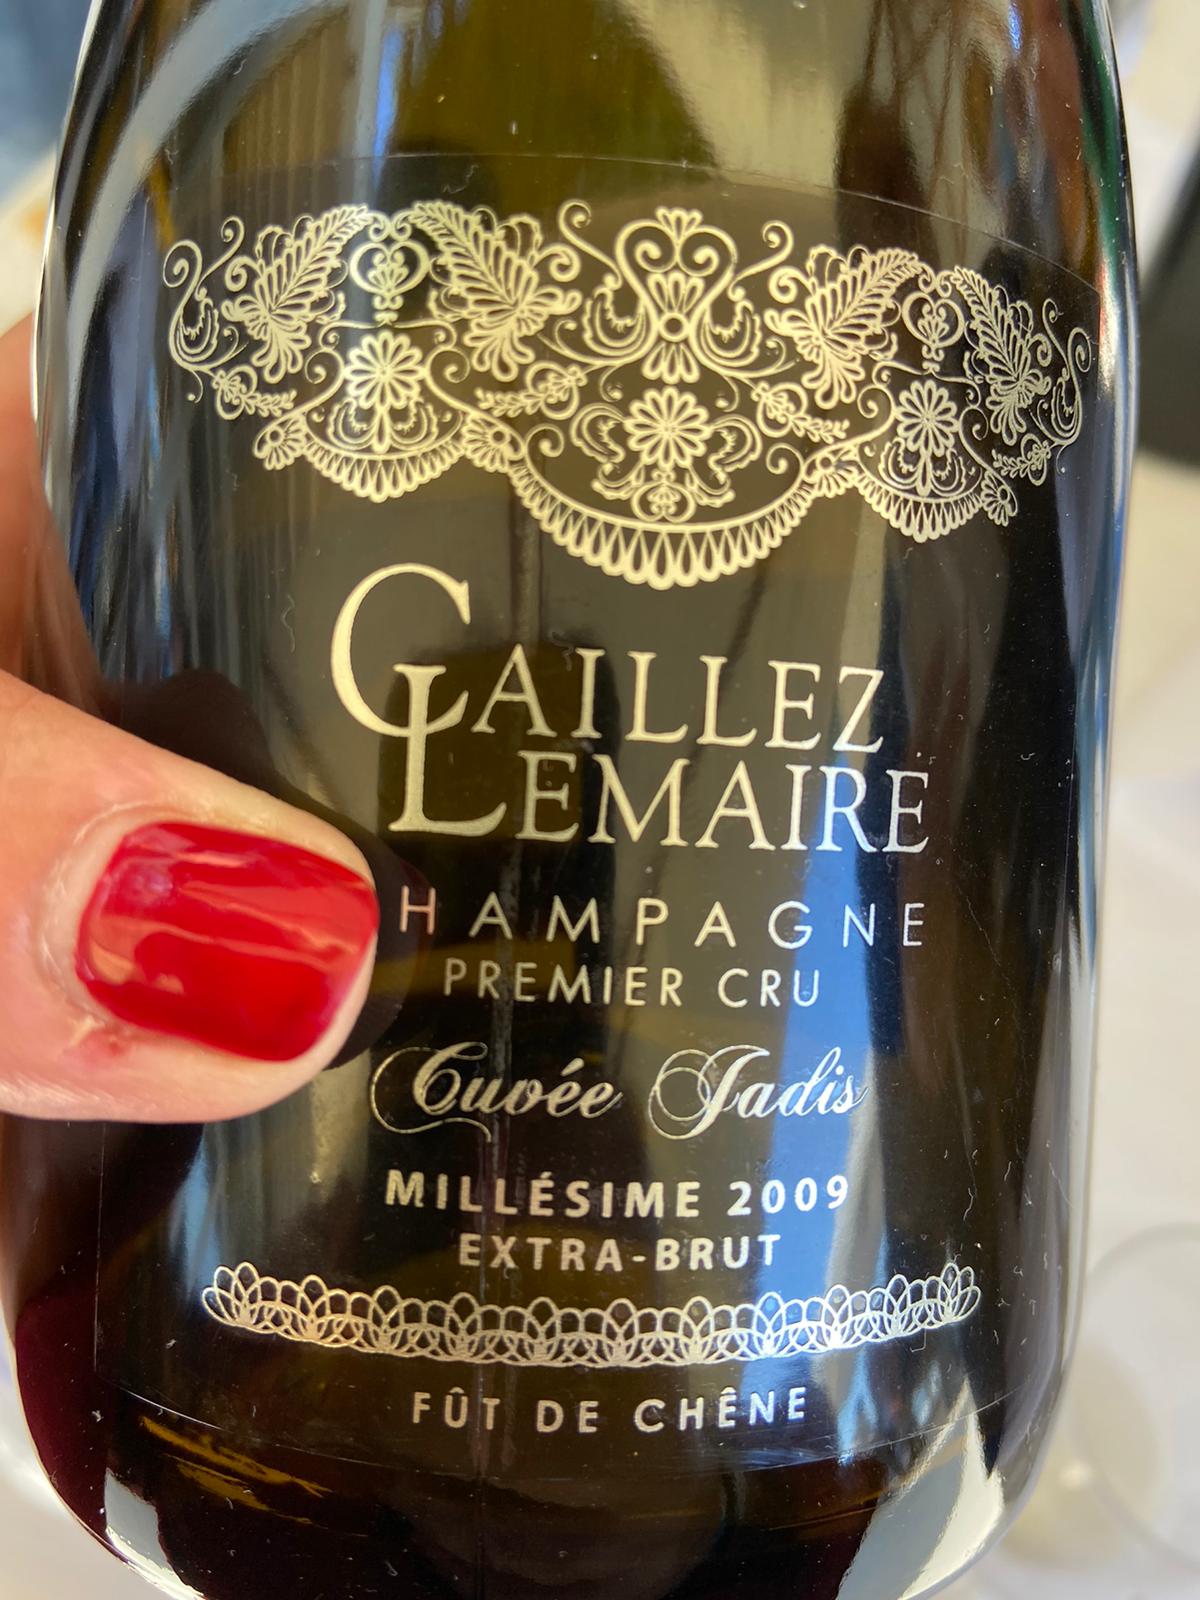 Caillez Lemaire Champagne Cuvée Jadis Millésimé Extra Brut 2009